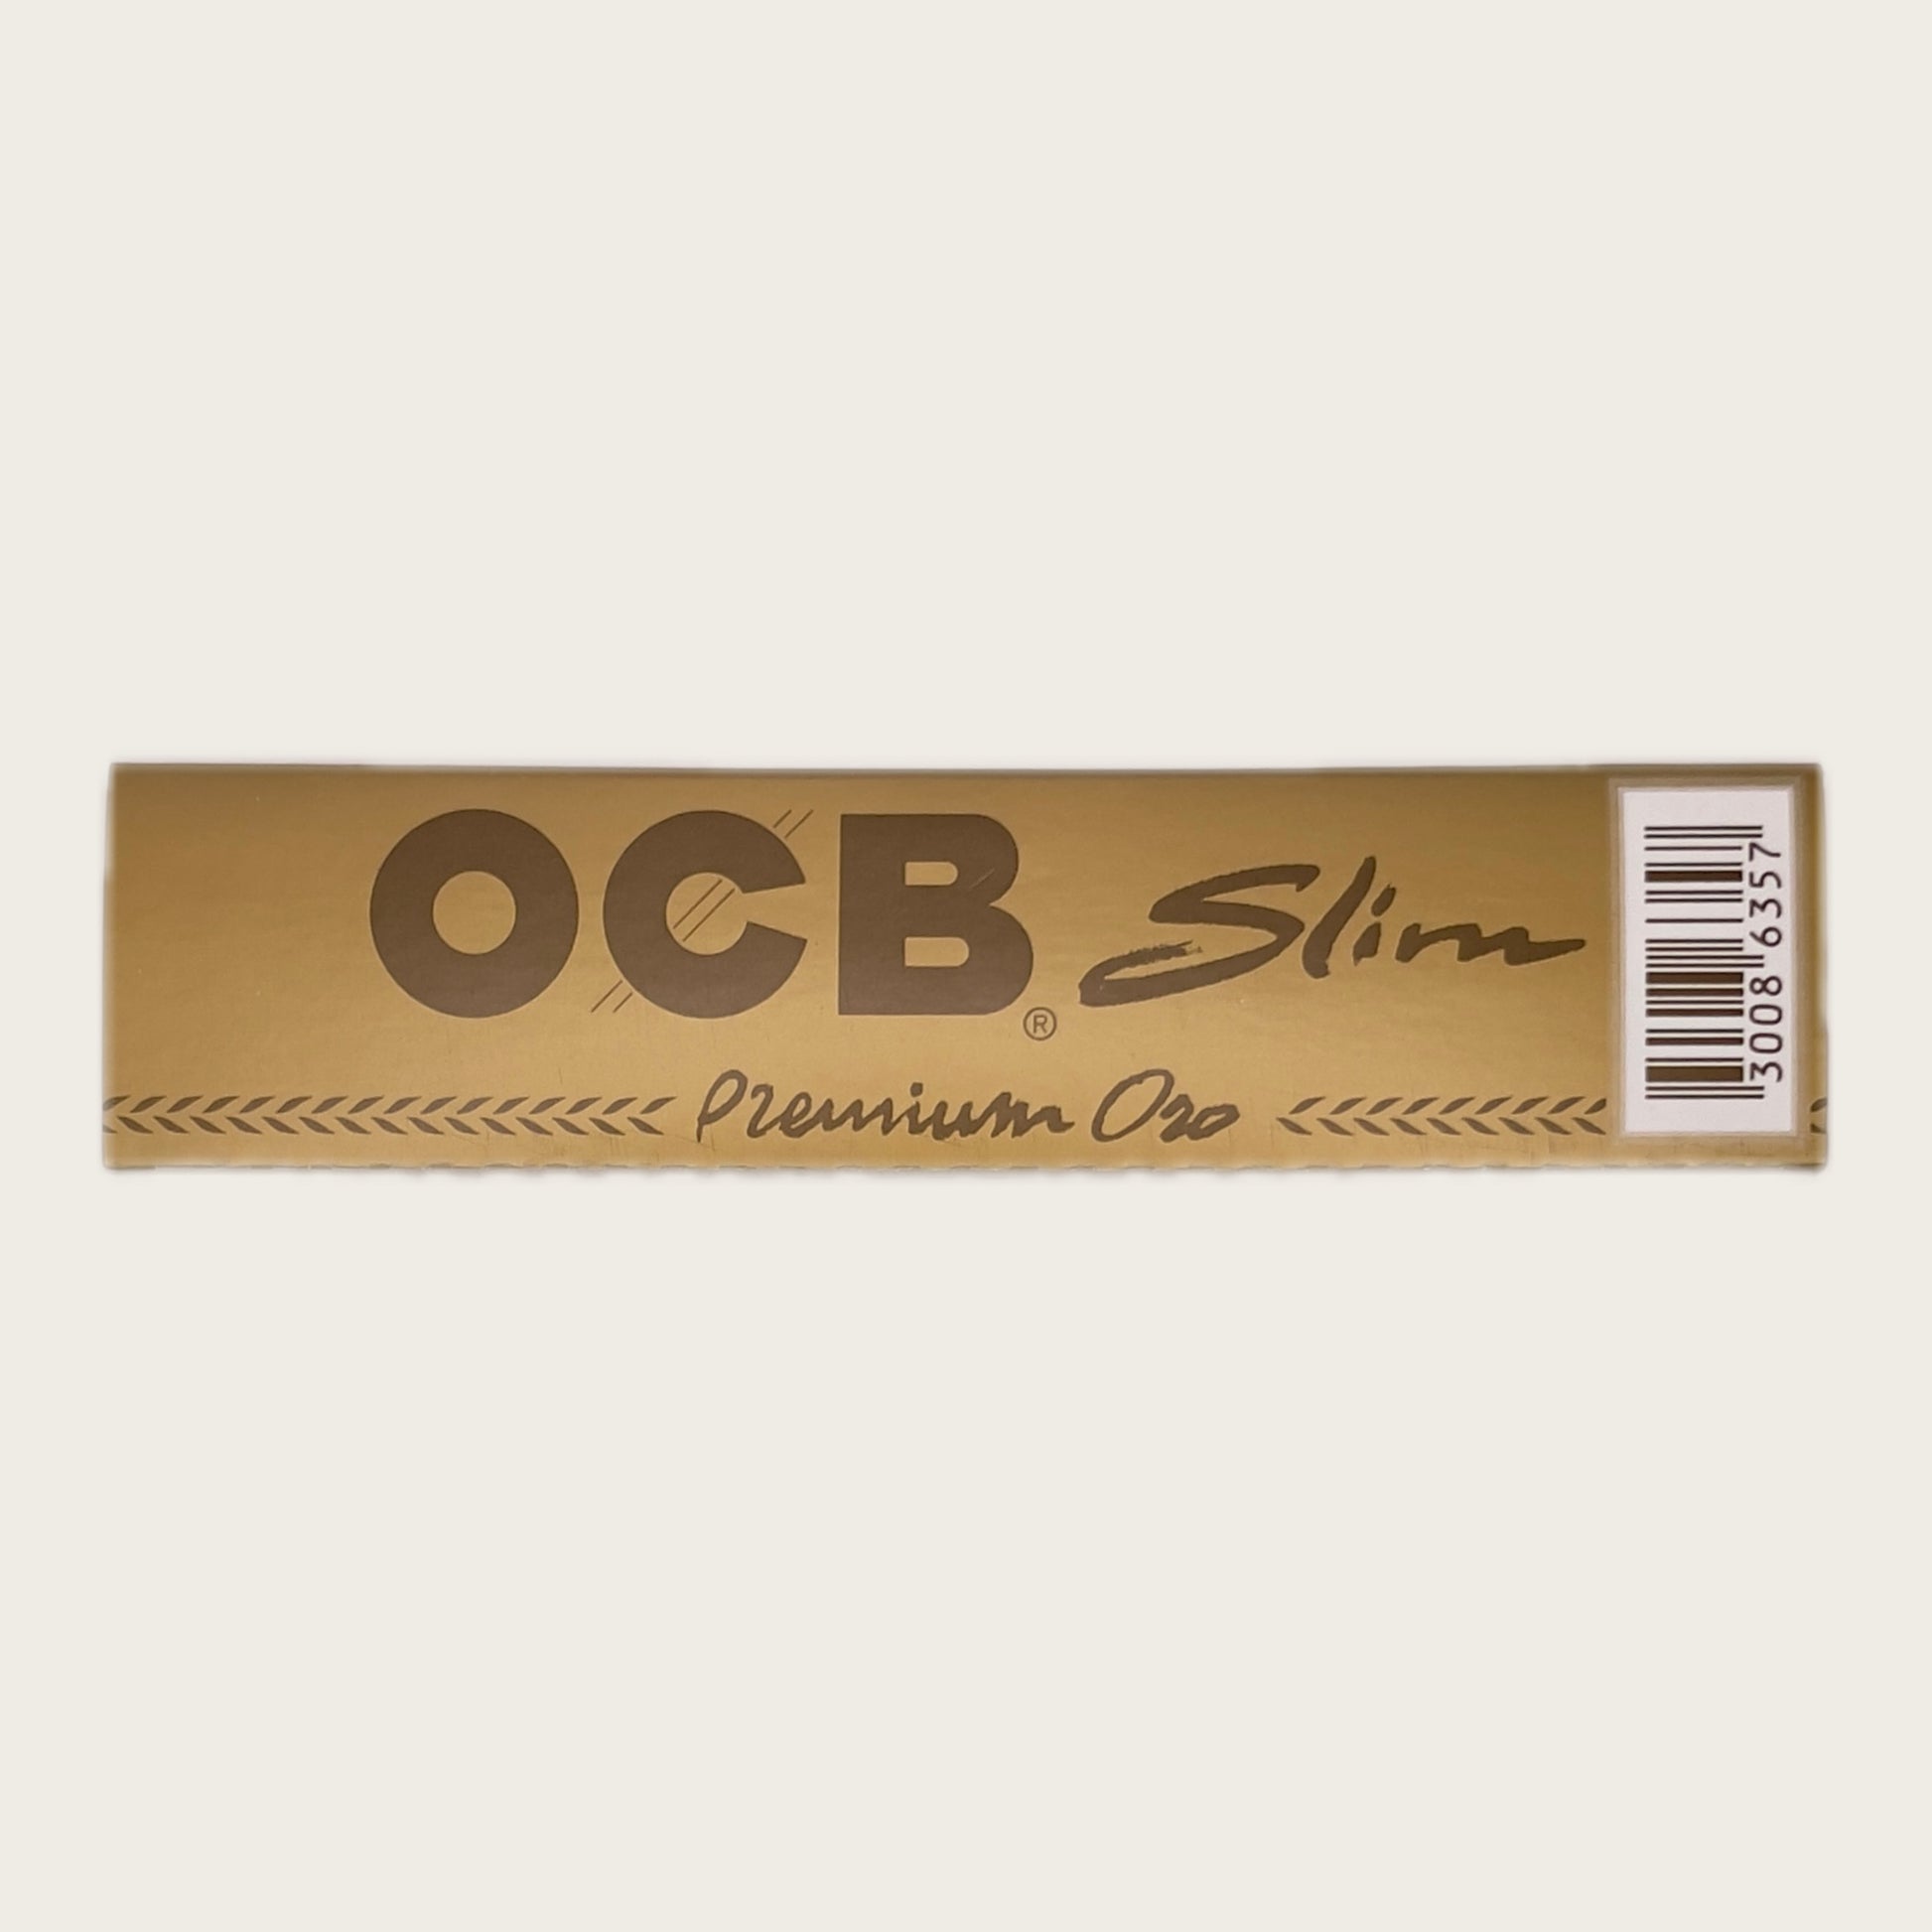 OCB SLIM PREMIUM ONE PAPERS - CANNACON - THAILANDS PREMIUM CANNABIS DELIVERY